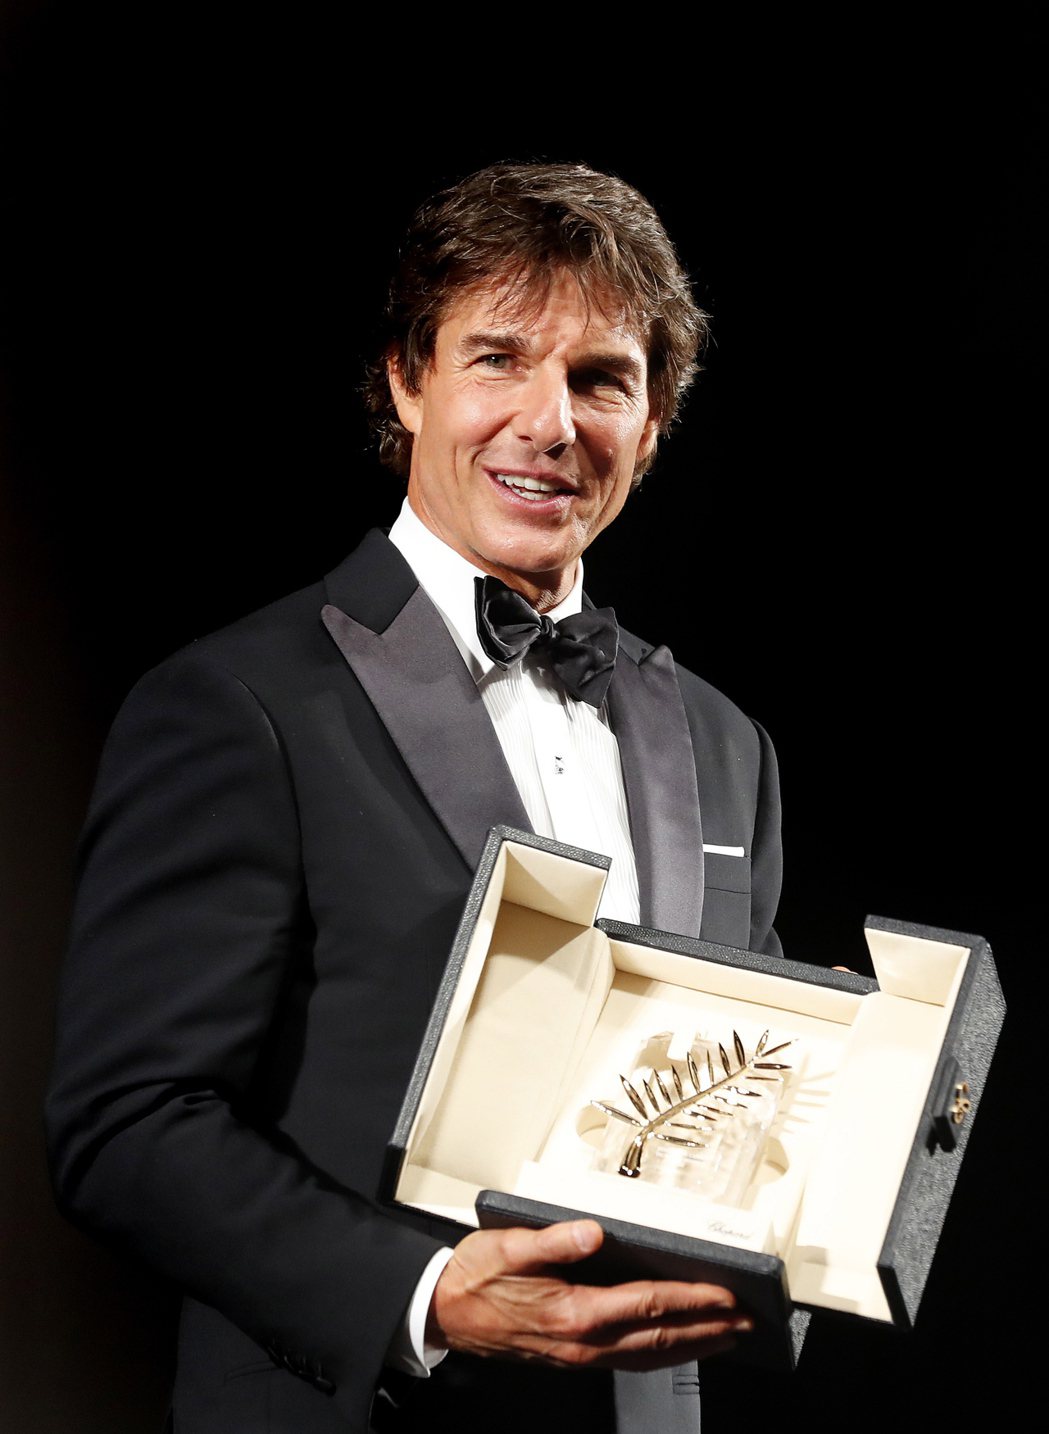 湯姆克魯斯獲頒榮譽金棕櫚獎，坎城影展主辦方感謝他在娛樂電影的高成就。(歐新社)